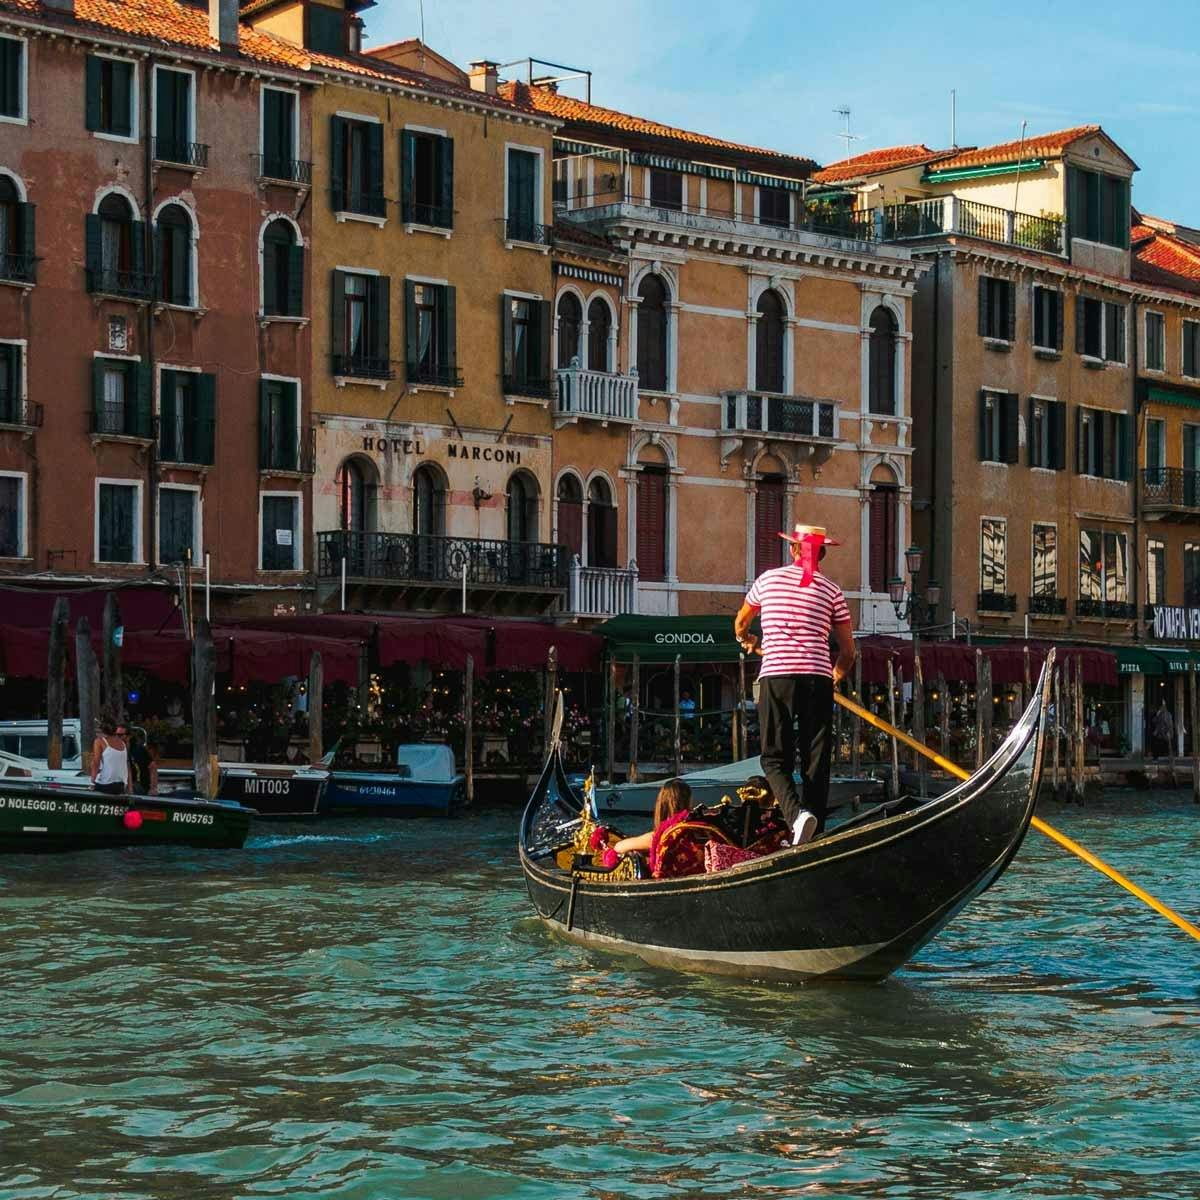 A gondola in Venice, Italy